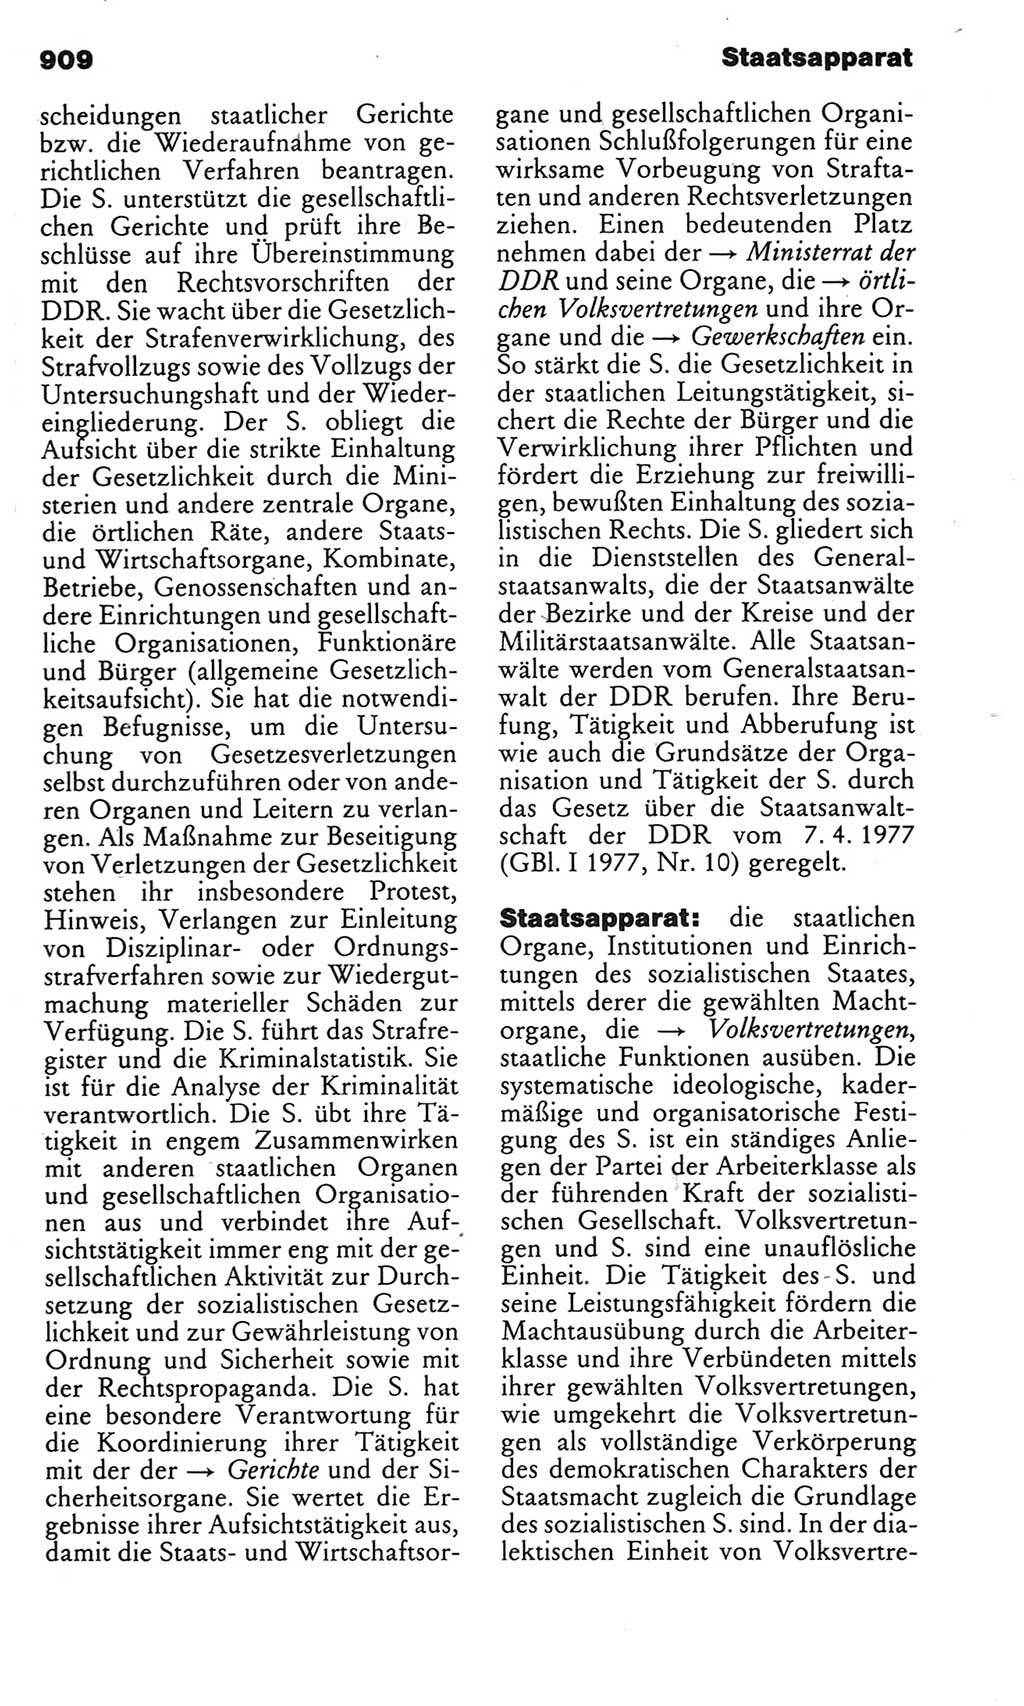 Kleines politisches Wörterbuch [Deutsche Demokratische Republik (DDR)] 1983, Seite 909 (Kl. pol. Wb. DDR 1983, S. 909)